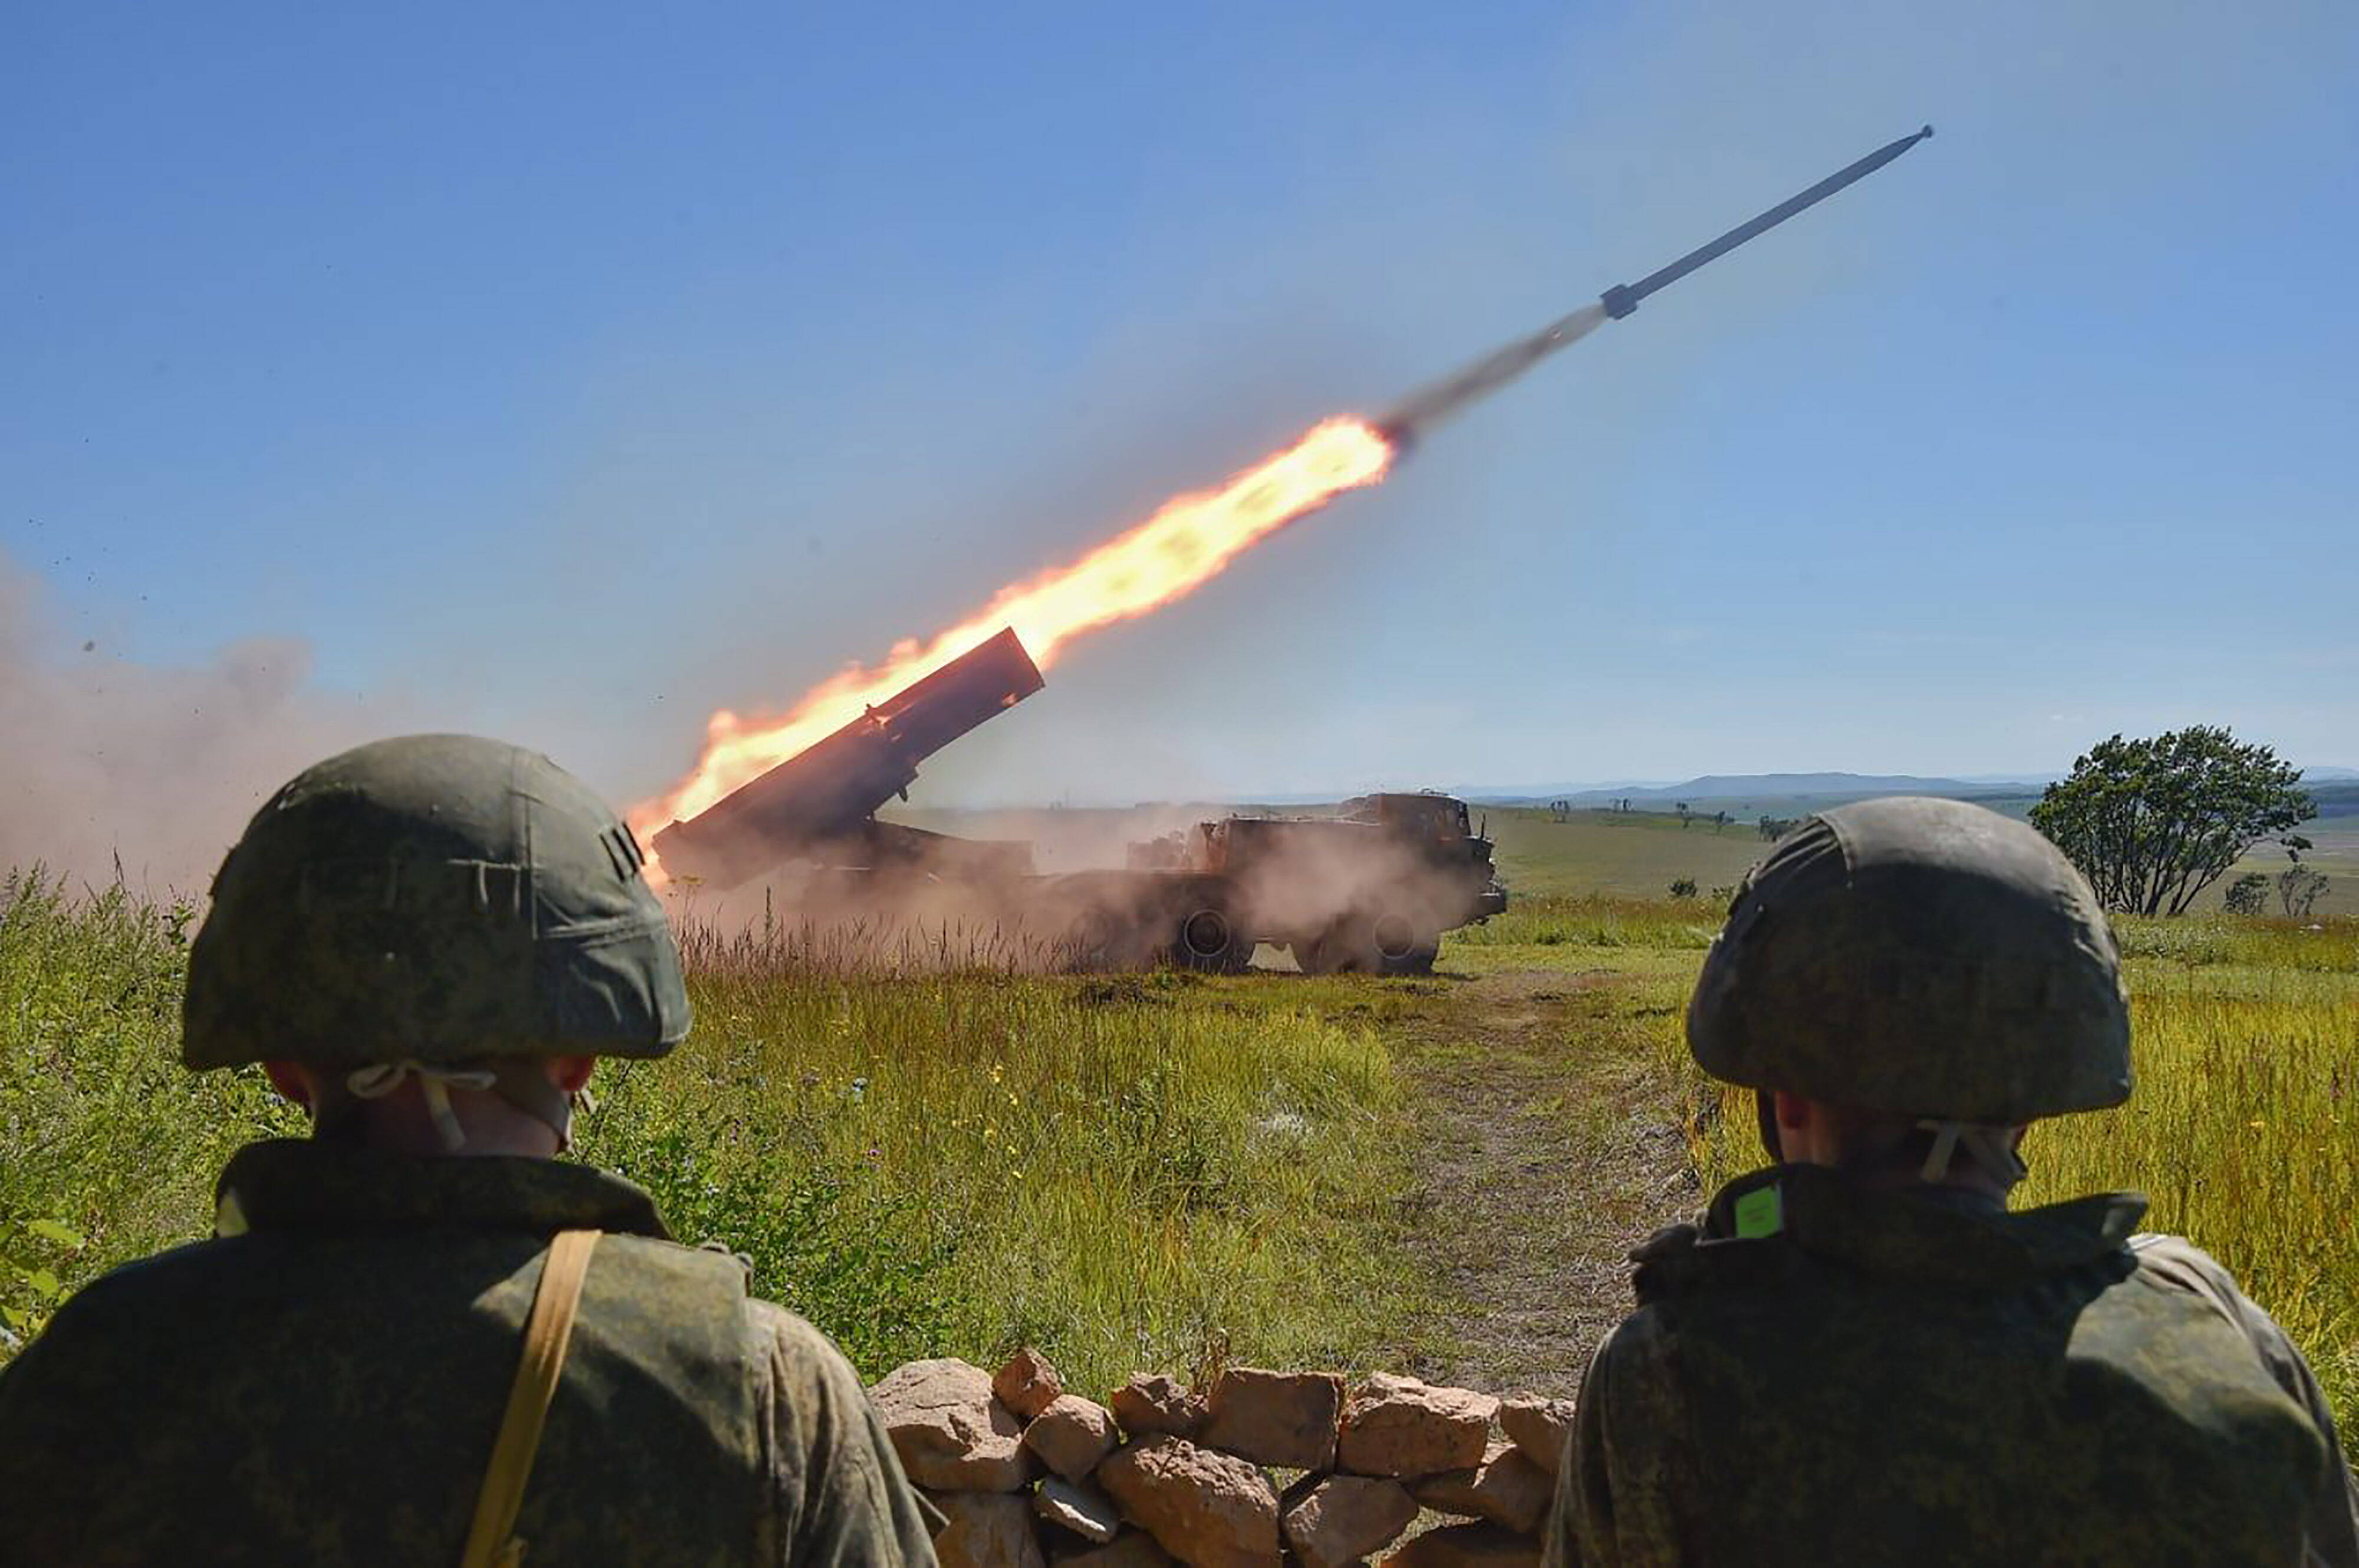 ++Eilmeldung++ Putin macht seine Atomraketen☢️ abschussbereit! Atomfähige Rakete über Kiew abgefangen!